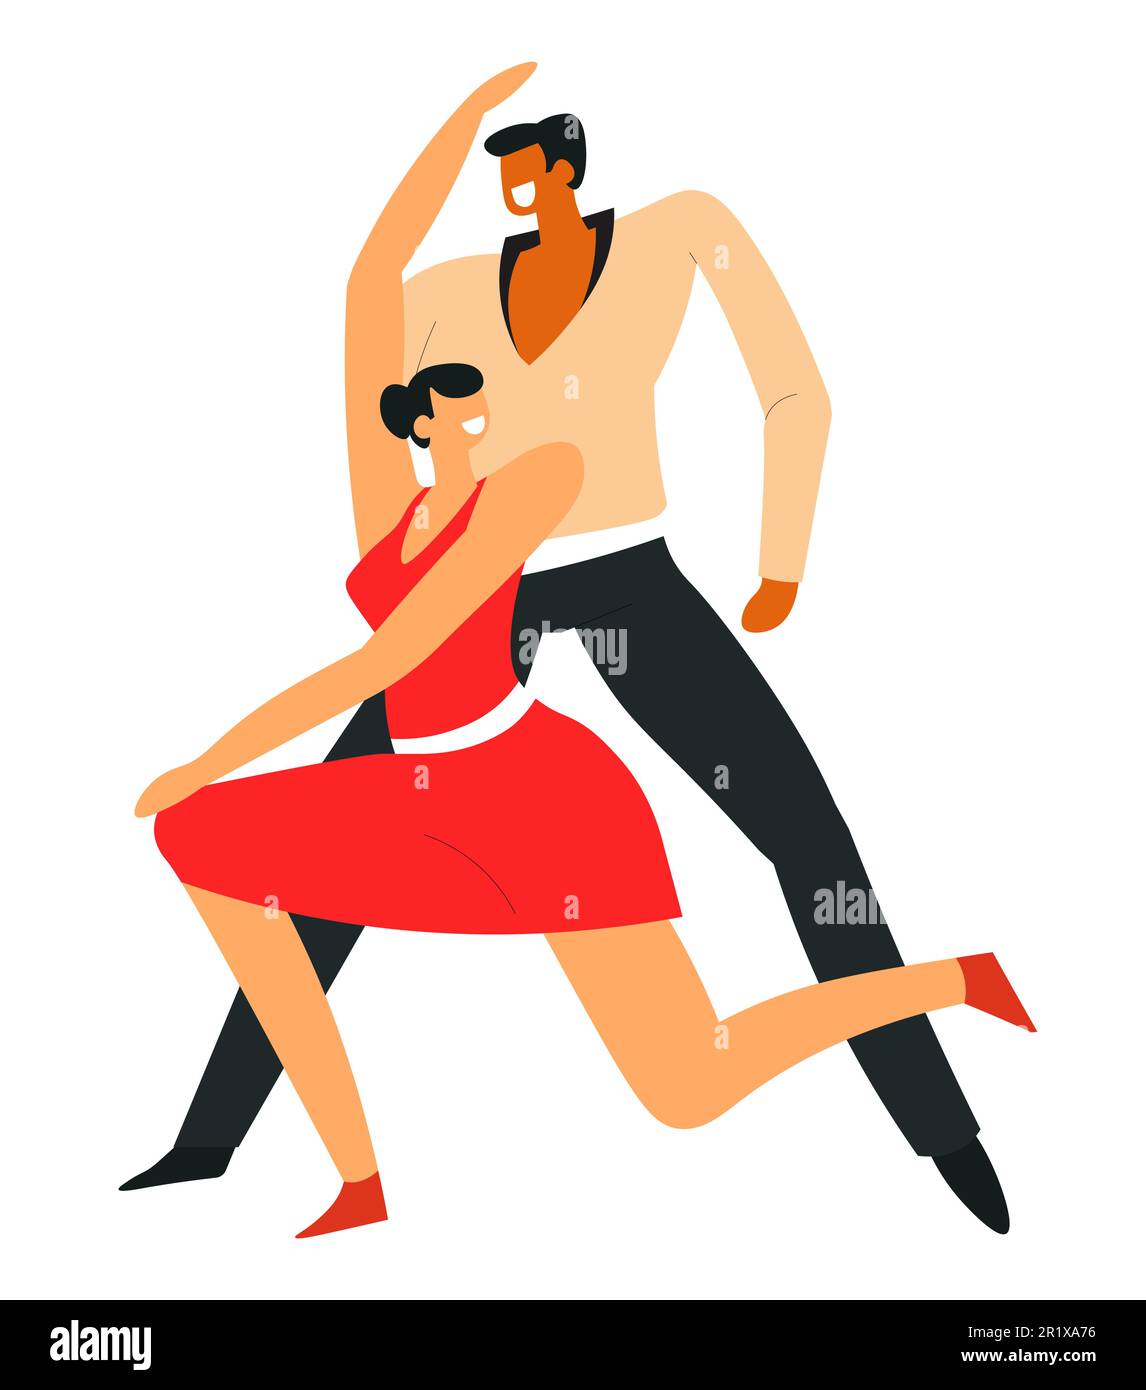 Mann und Frau tanzen Samba, lateinamerikanischer Tanz Stock Vektor